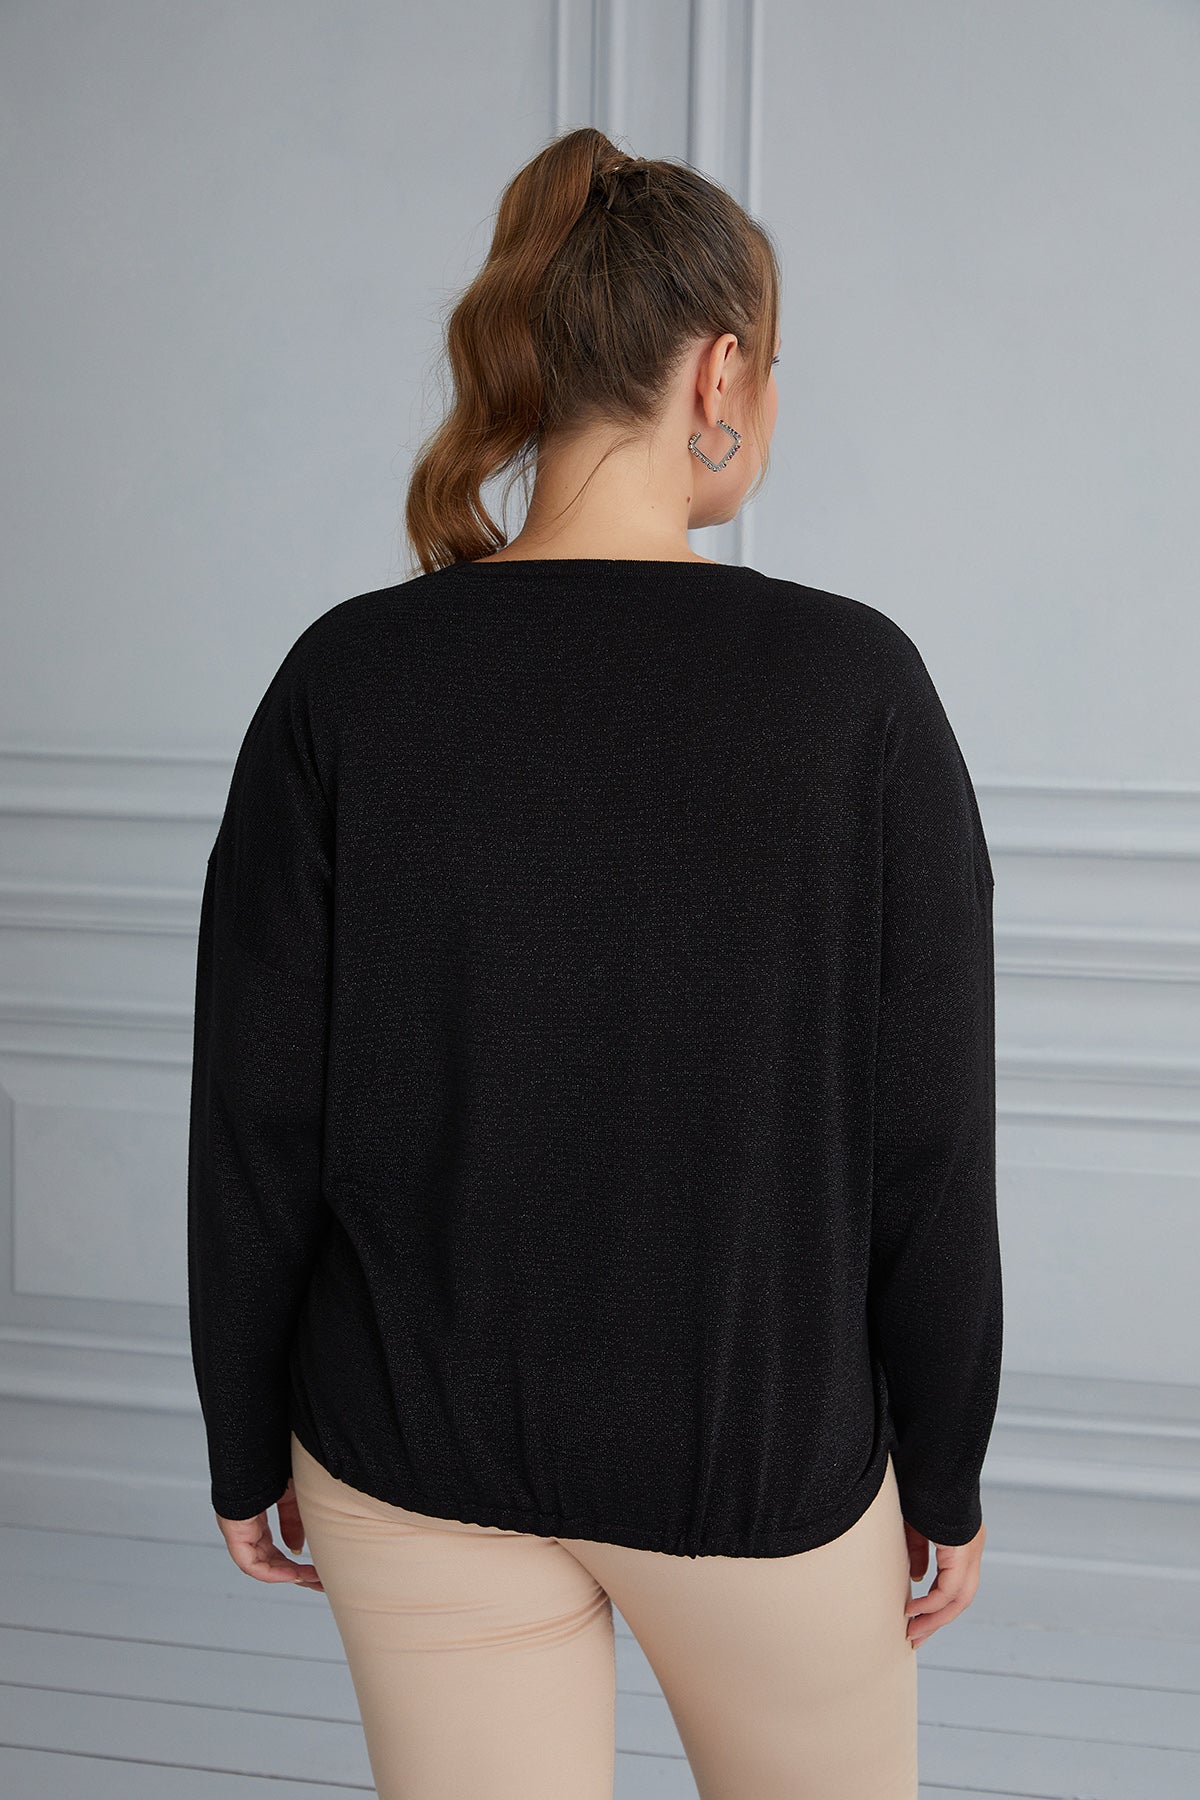 Πλεκτή γυναικεία μπλούζα με στάμπα και κορδόνια σε μεγάλα μεγέθη- Μαύρο